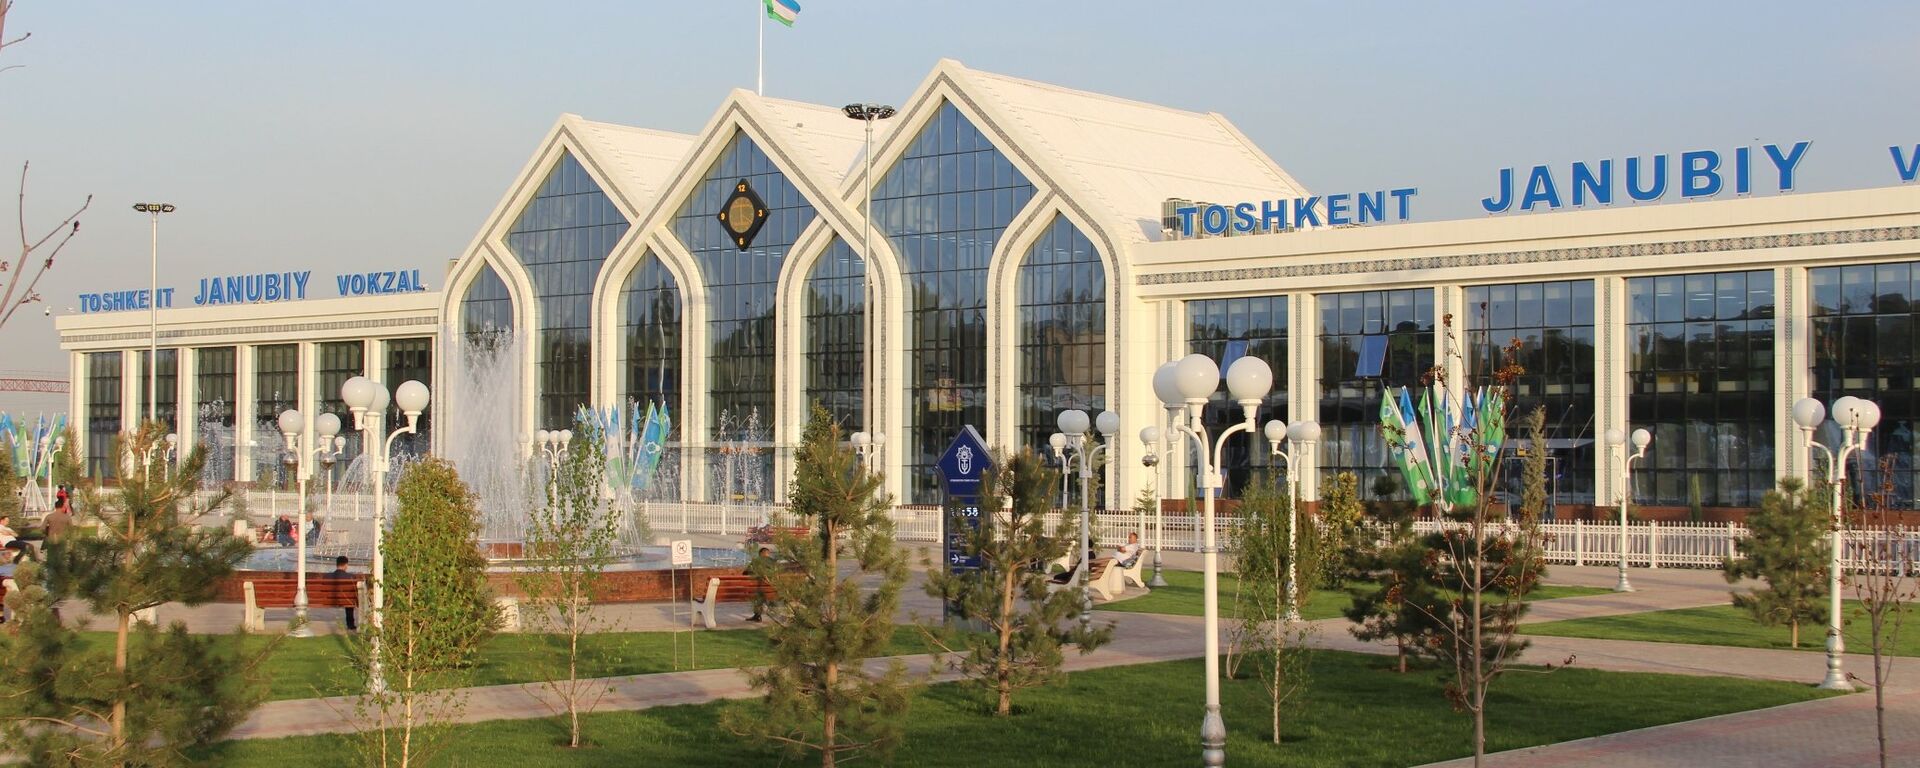 Южный вокзал Ташкента после реконструкции - Sputnik Ўзбекистон, 1920, 21.10.2021